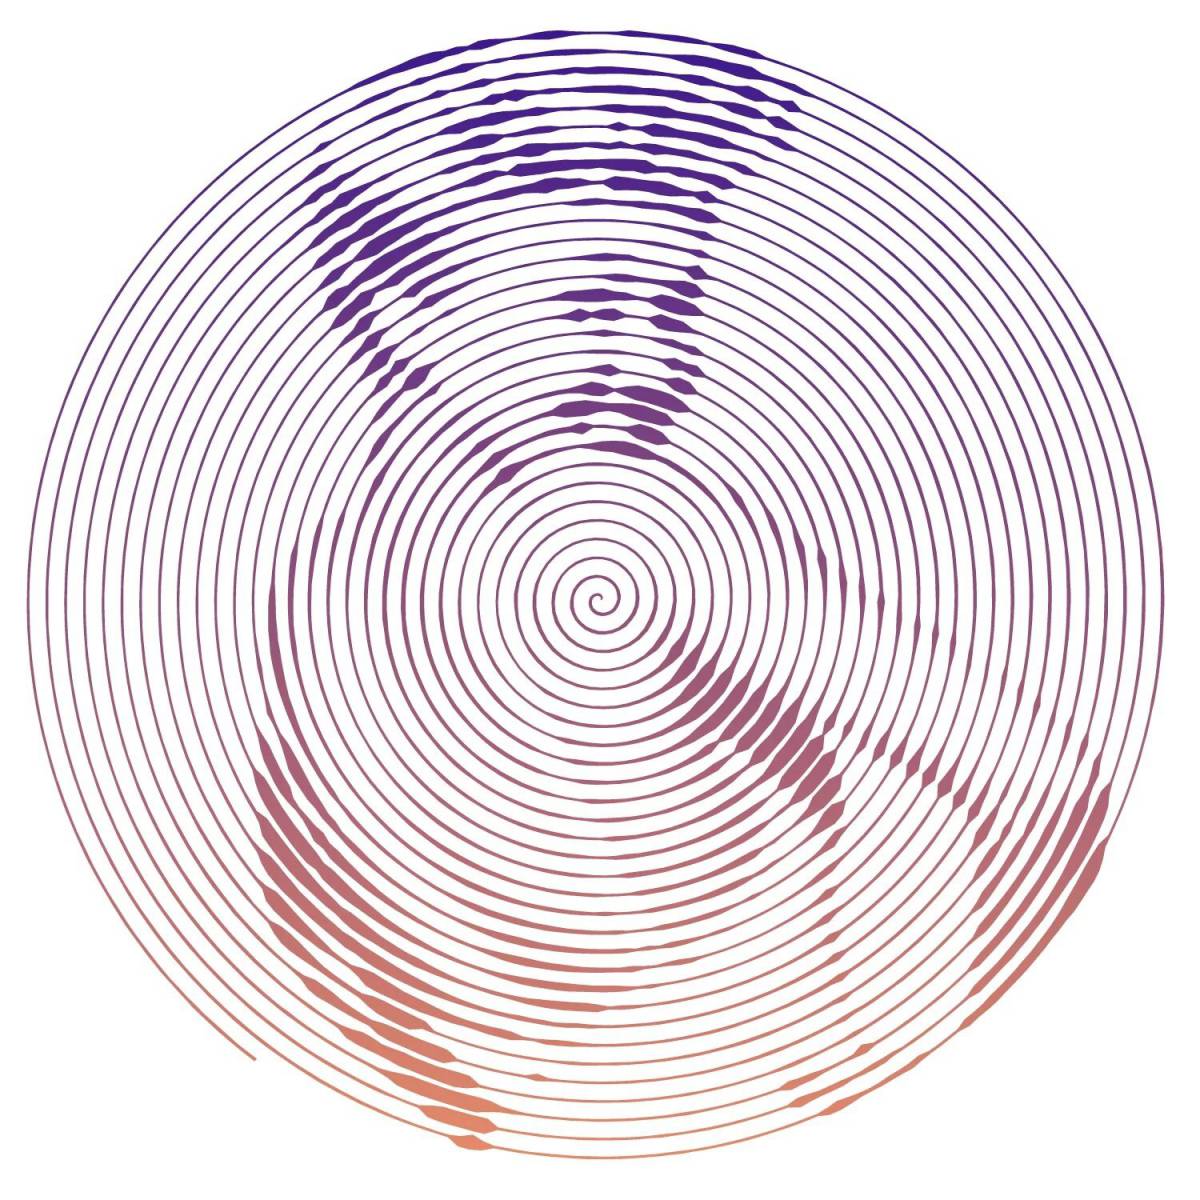 Arseny popov's incredible spiral coloring